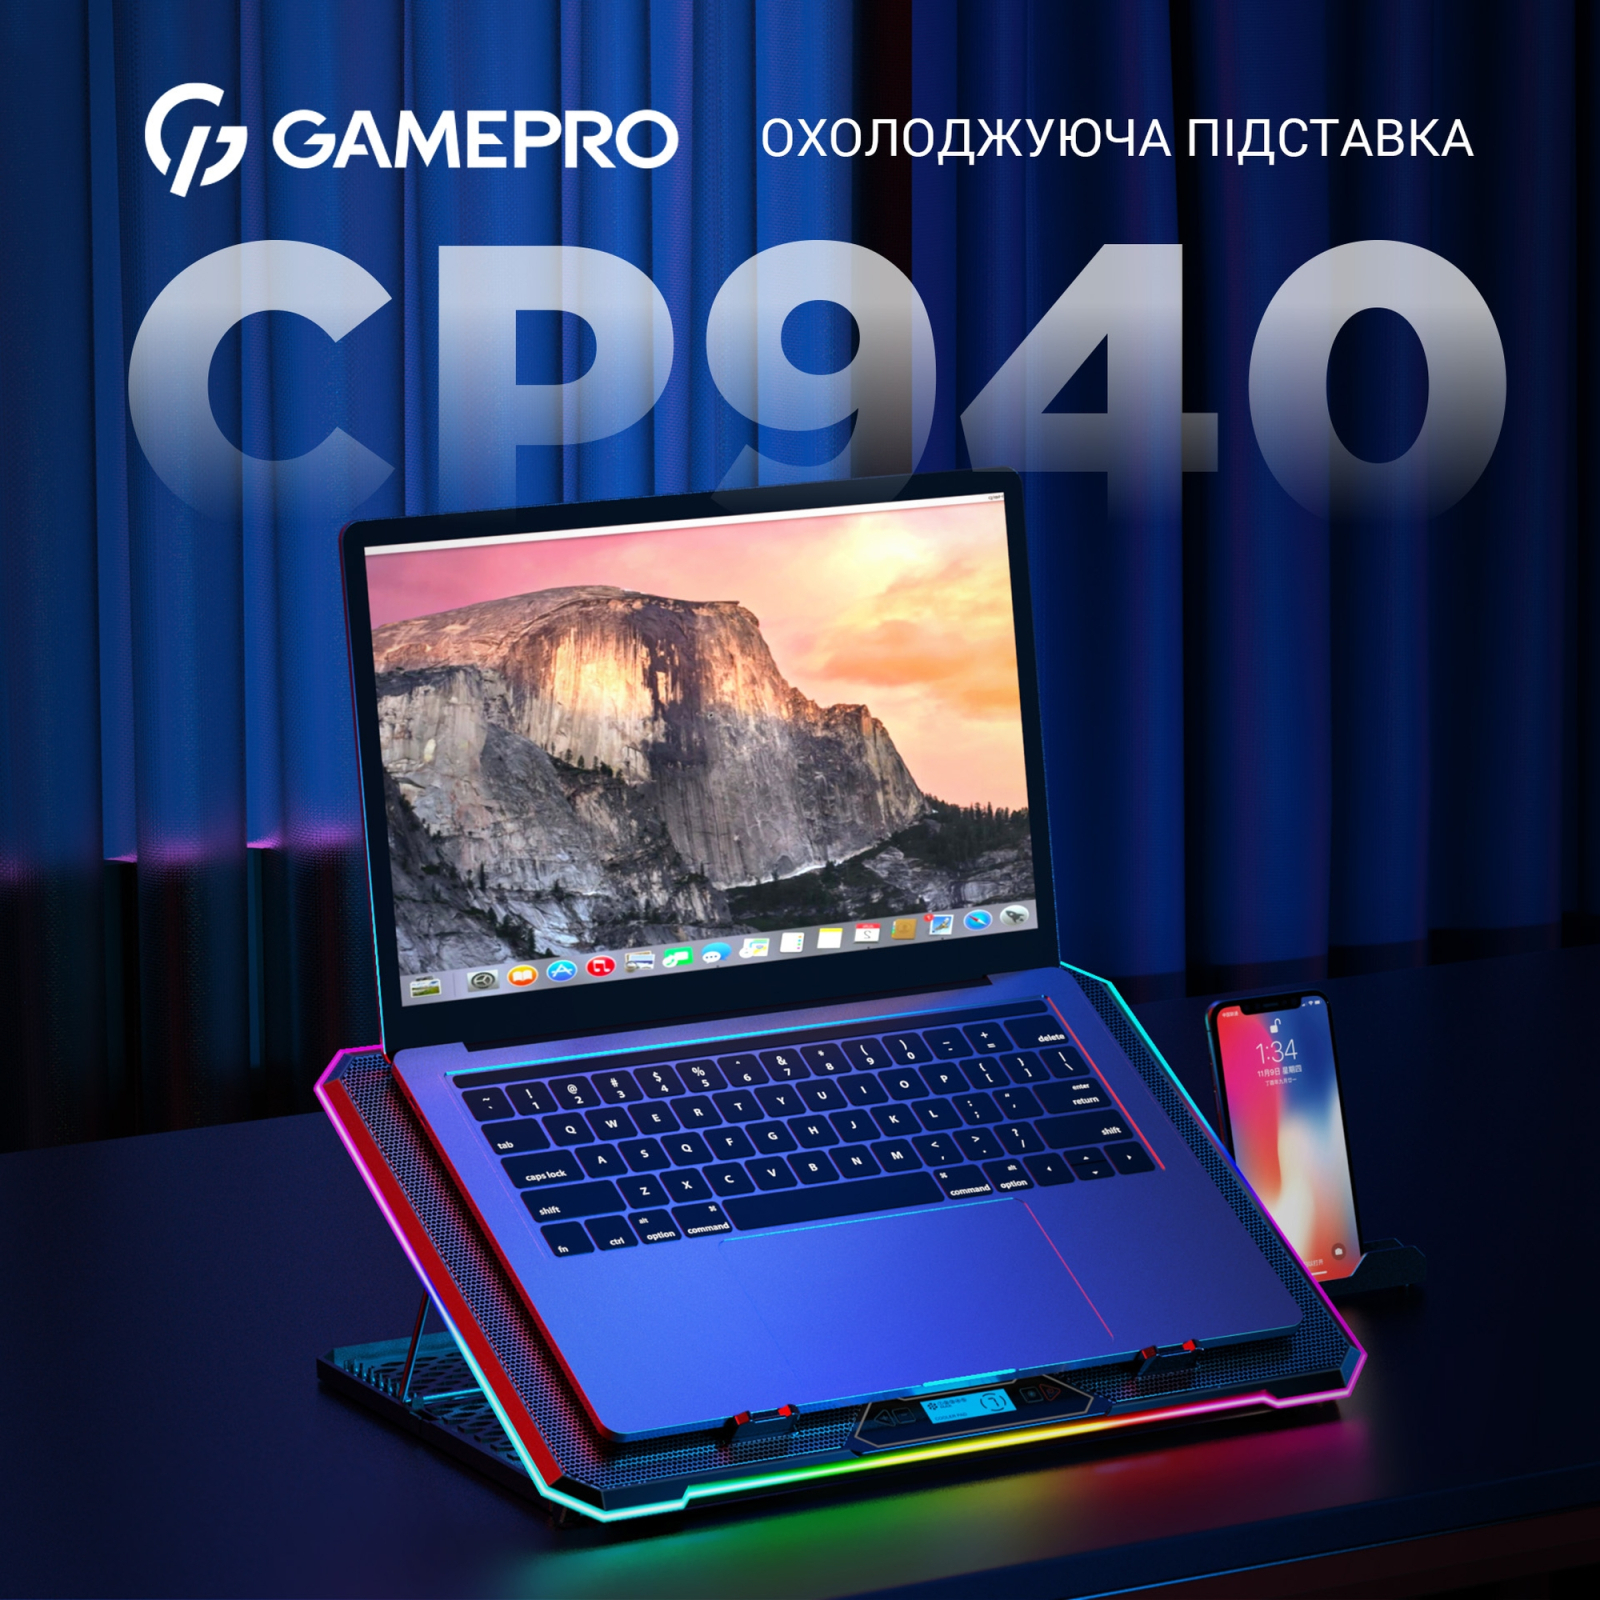 Підставка до ноутбука GamePro CP940 зображення 4